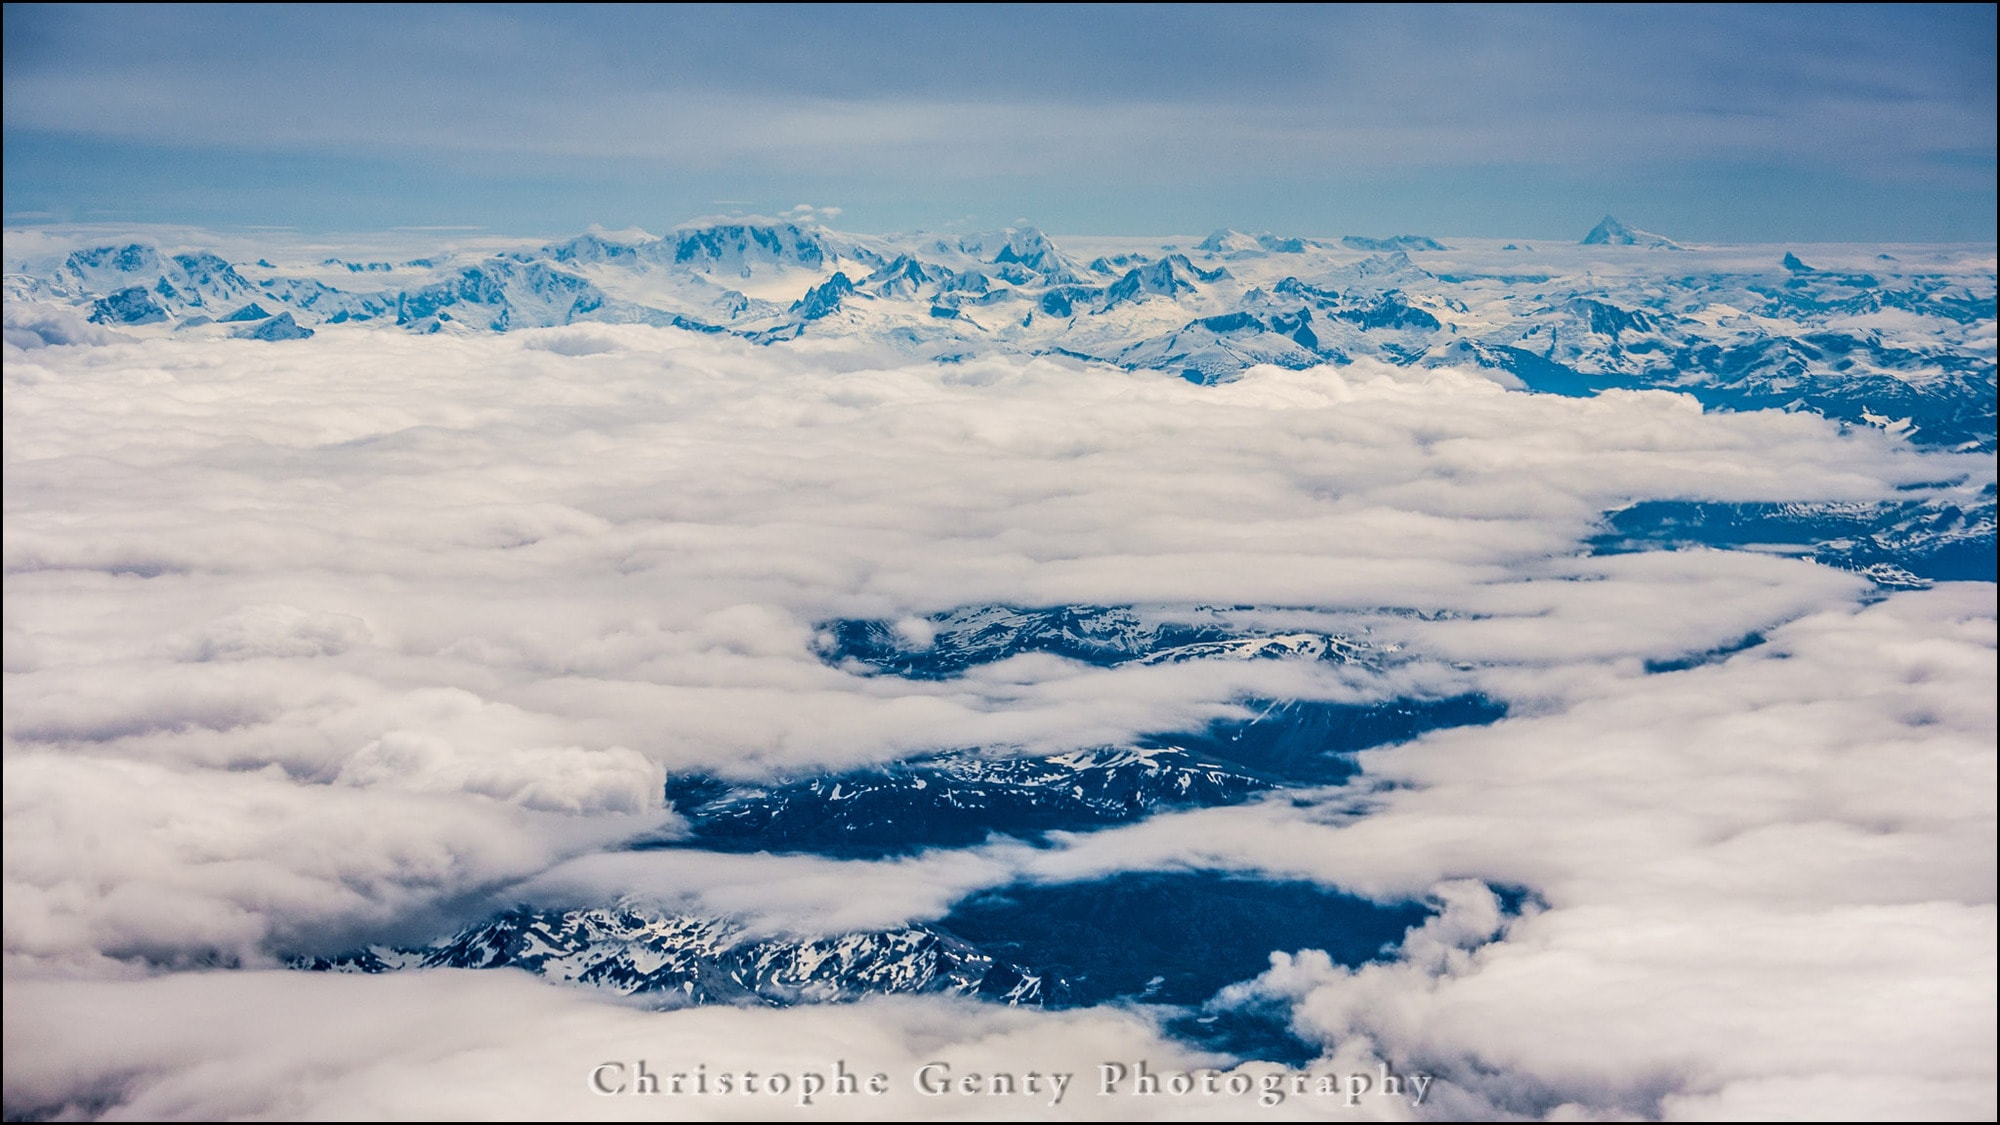 Tierra del Fuego from the sky, Argentina - December 2015